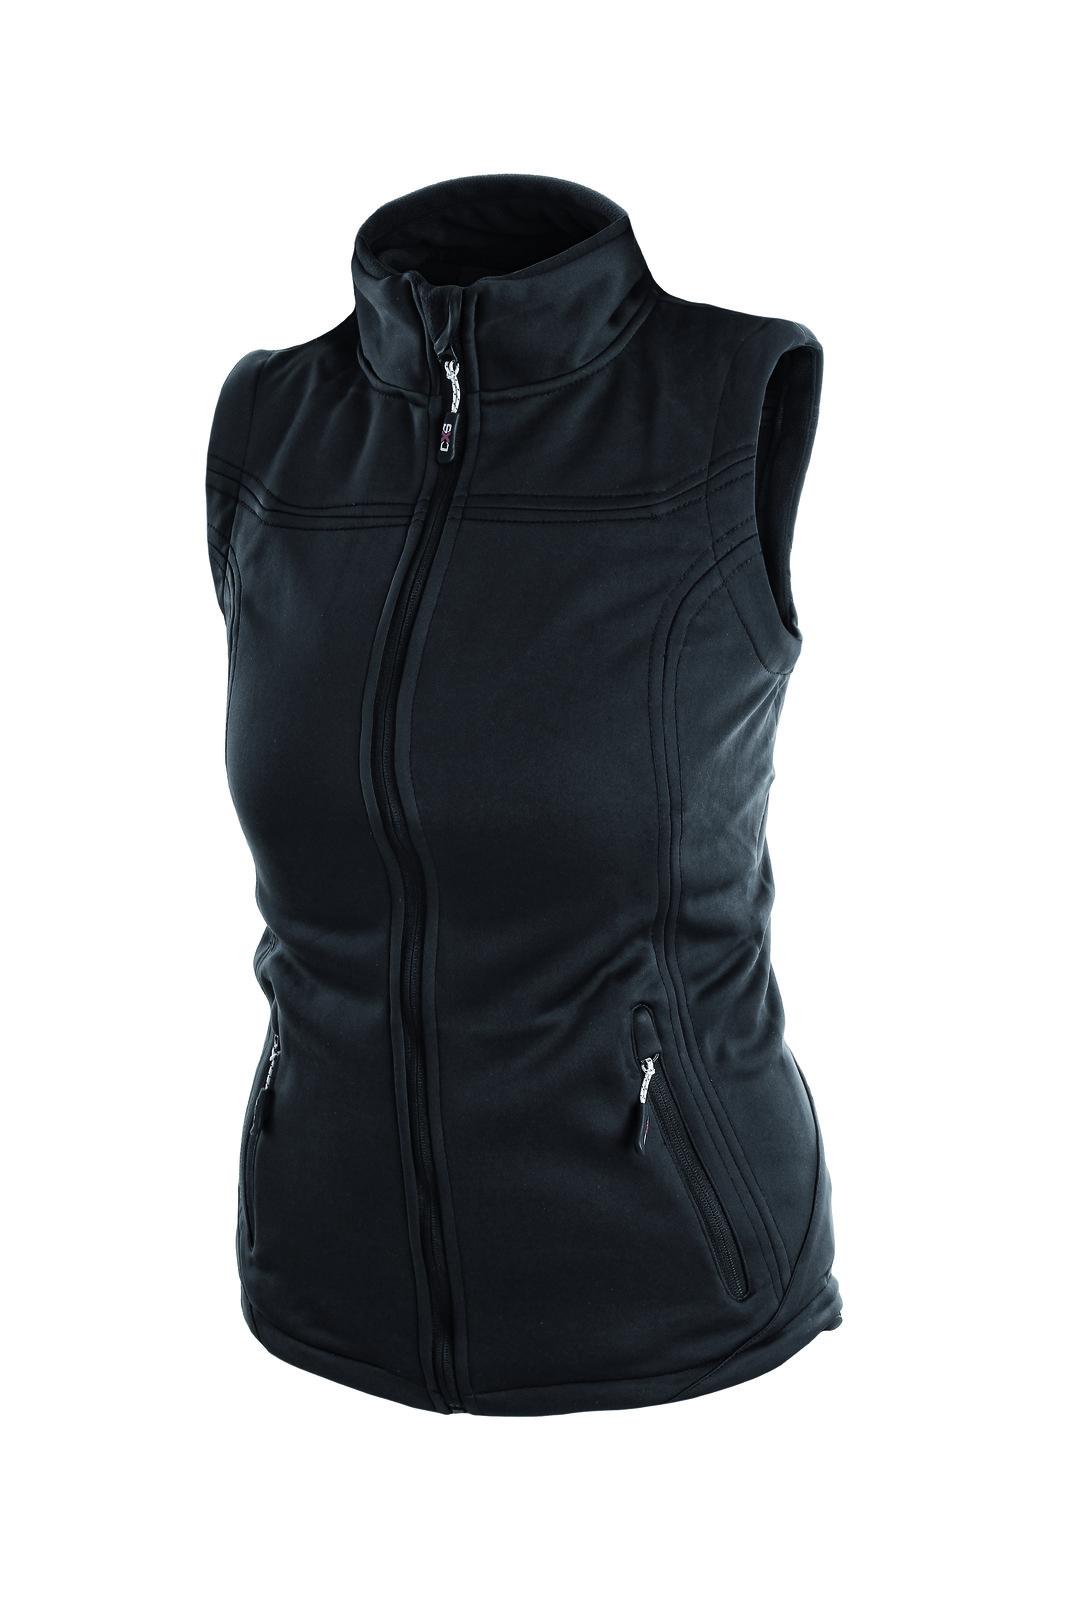 Ľahká dámska vesta Laredo - veľkosť: XXL, farba: čierna